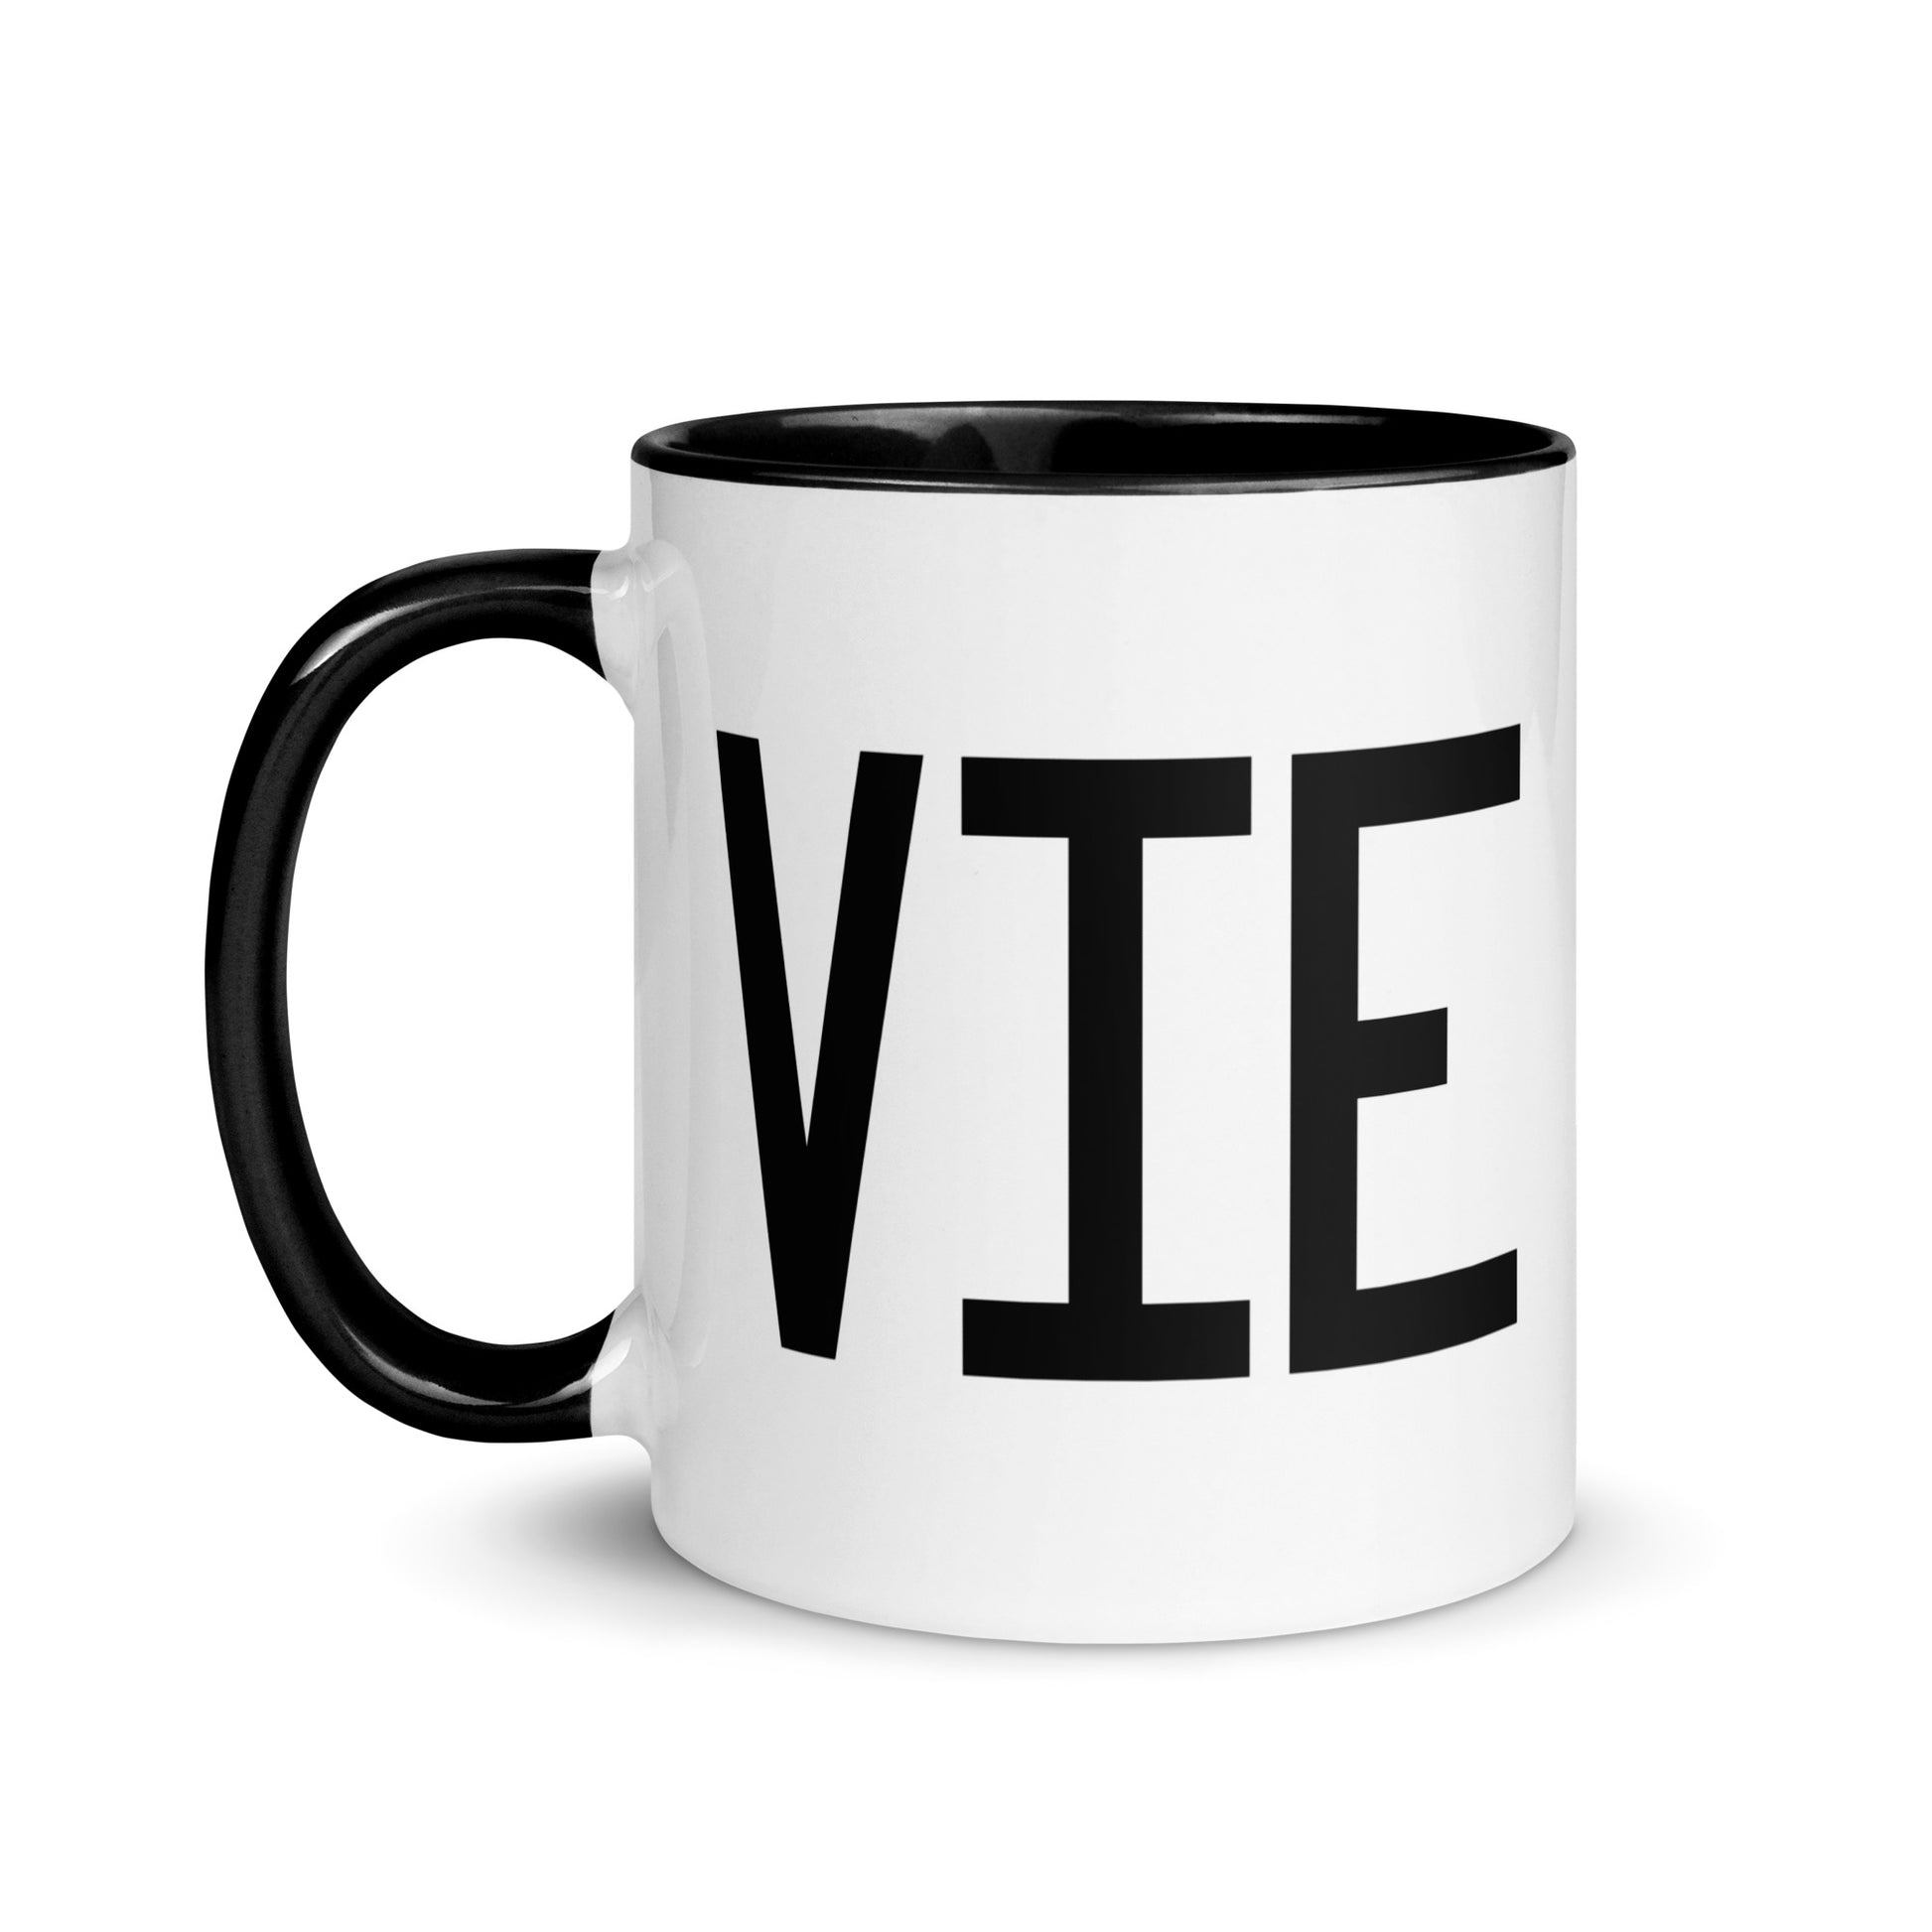 Aviation-Theme Coffee Mug - Black • VIE Vienna • YHM Designs - Image 03